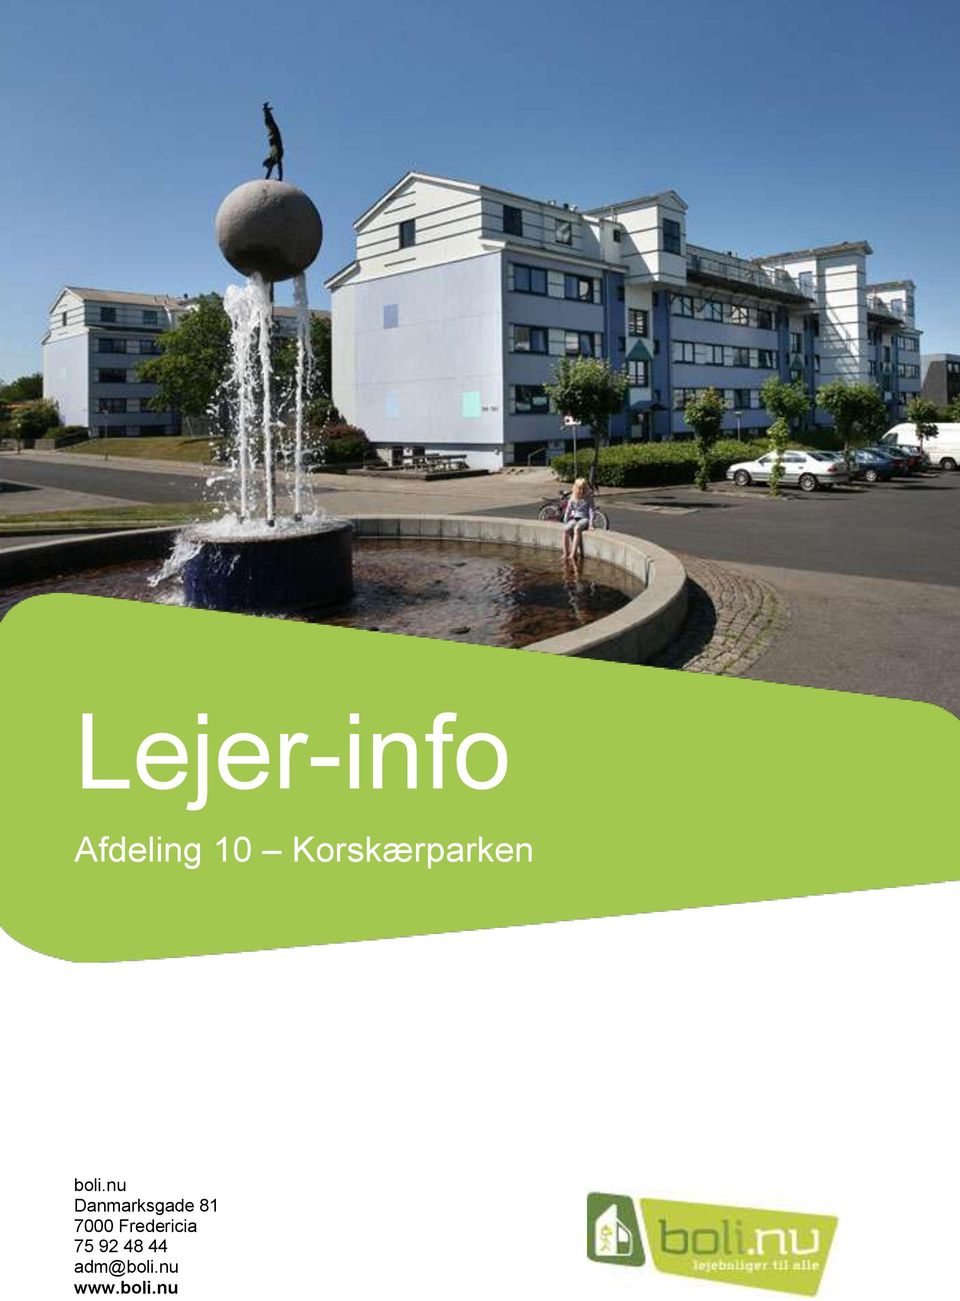 Lejer-info. Afdeling sp 10 Korskærparken. boli.nu Danmarksgade Fredericia -  PDF Gratis download